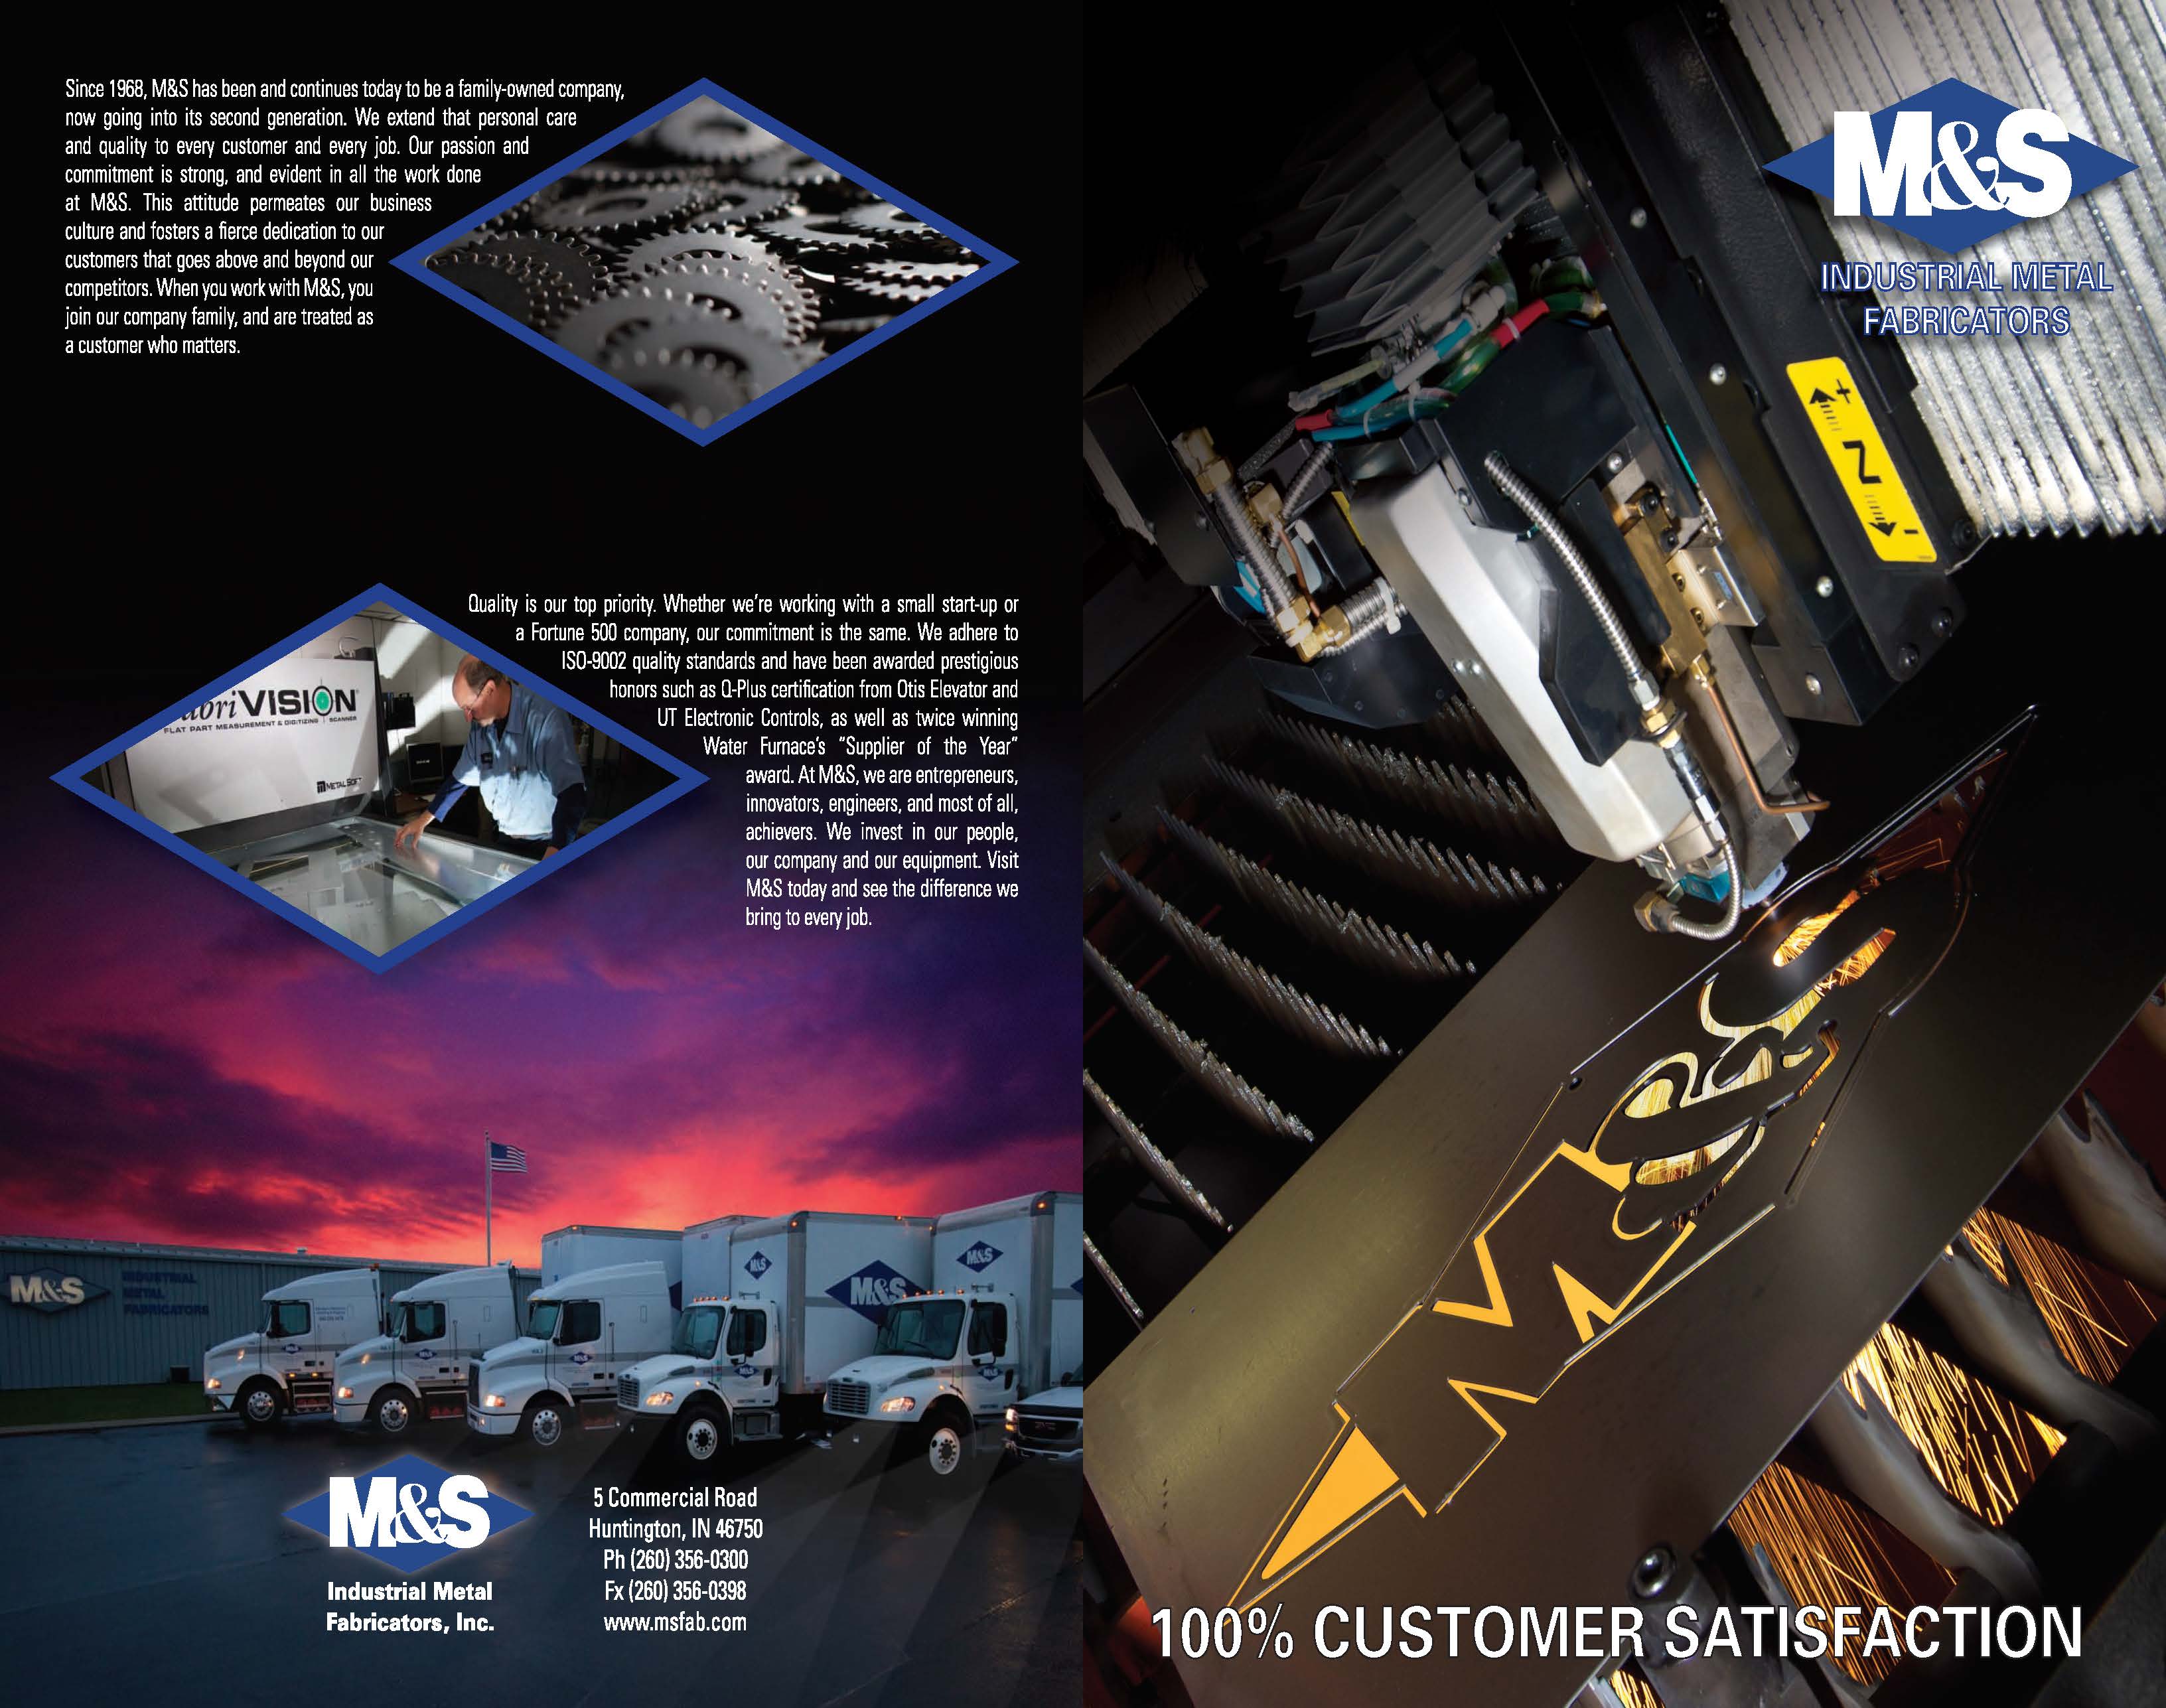 M&S Industrial Metal Fabricators - Literature - Lassiter Advertising Inc